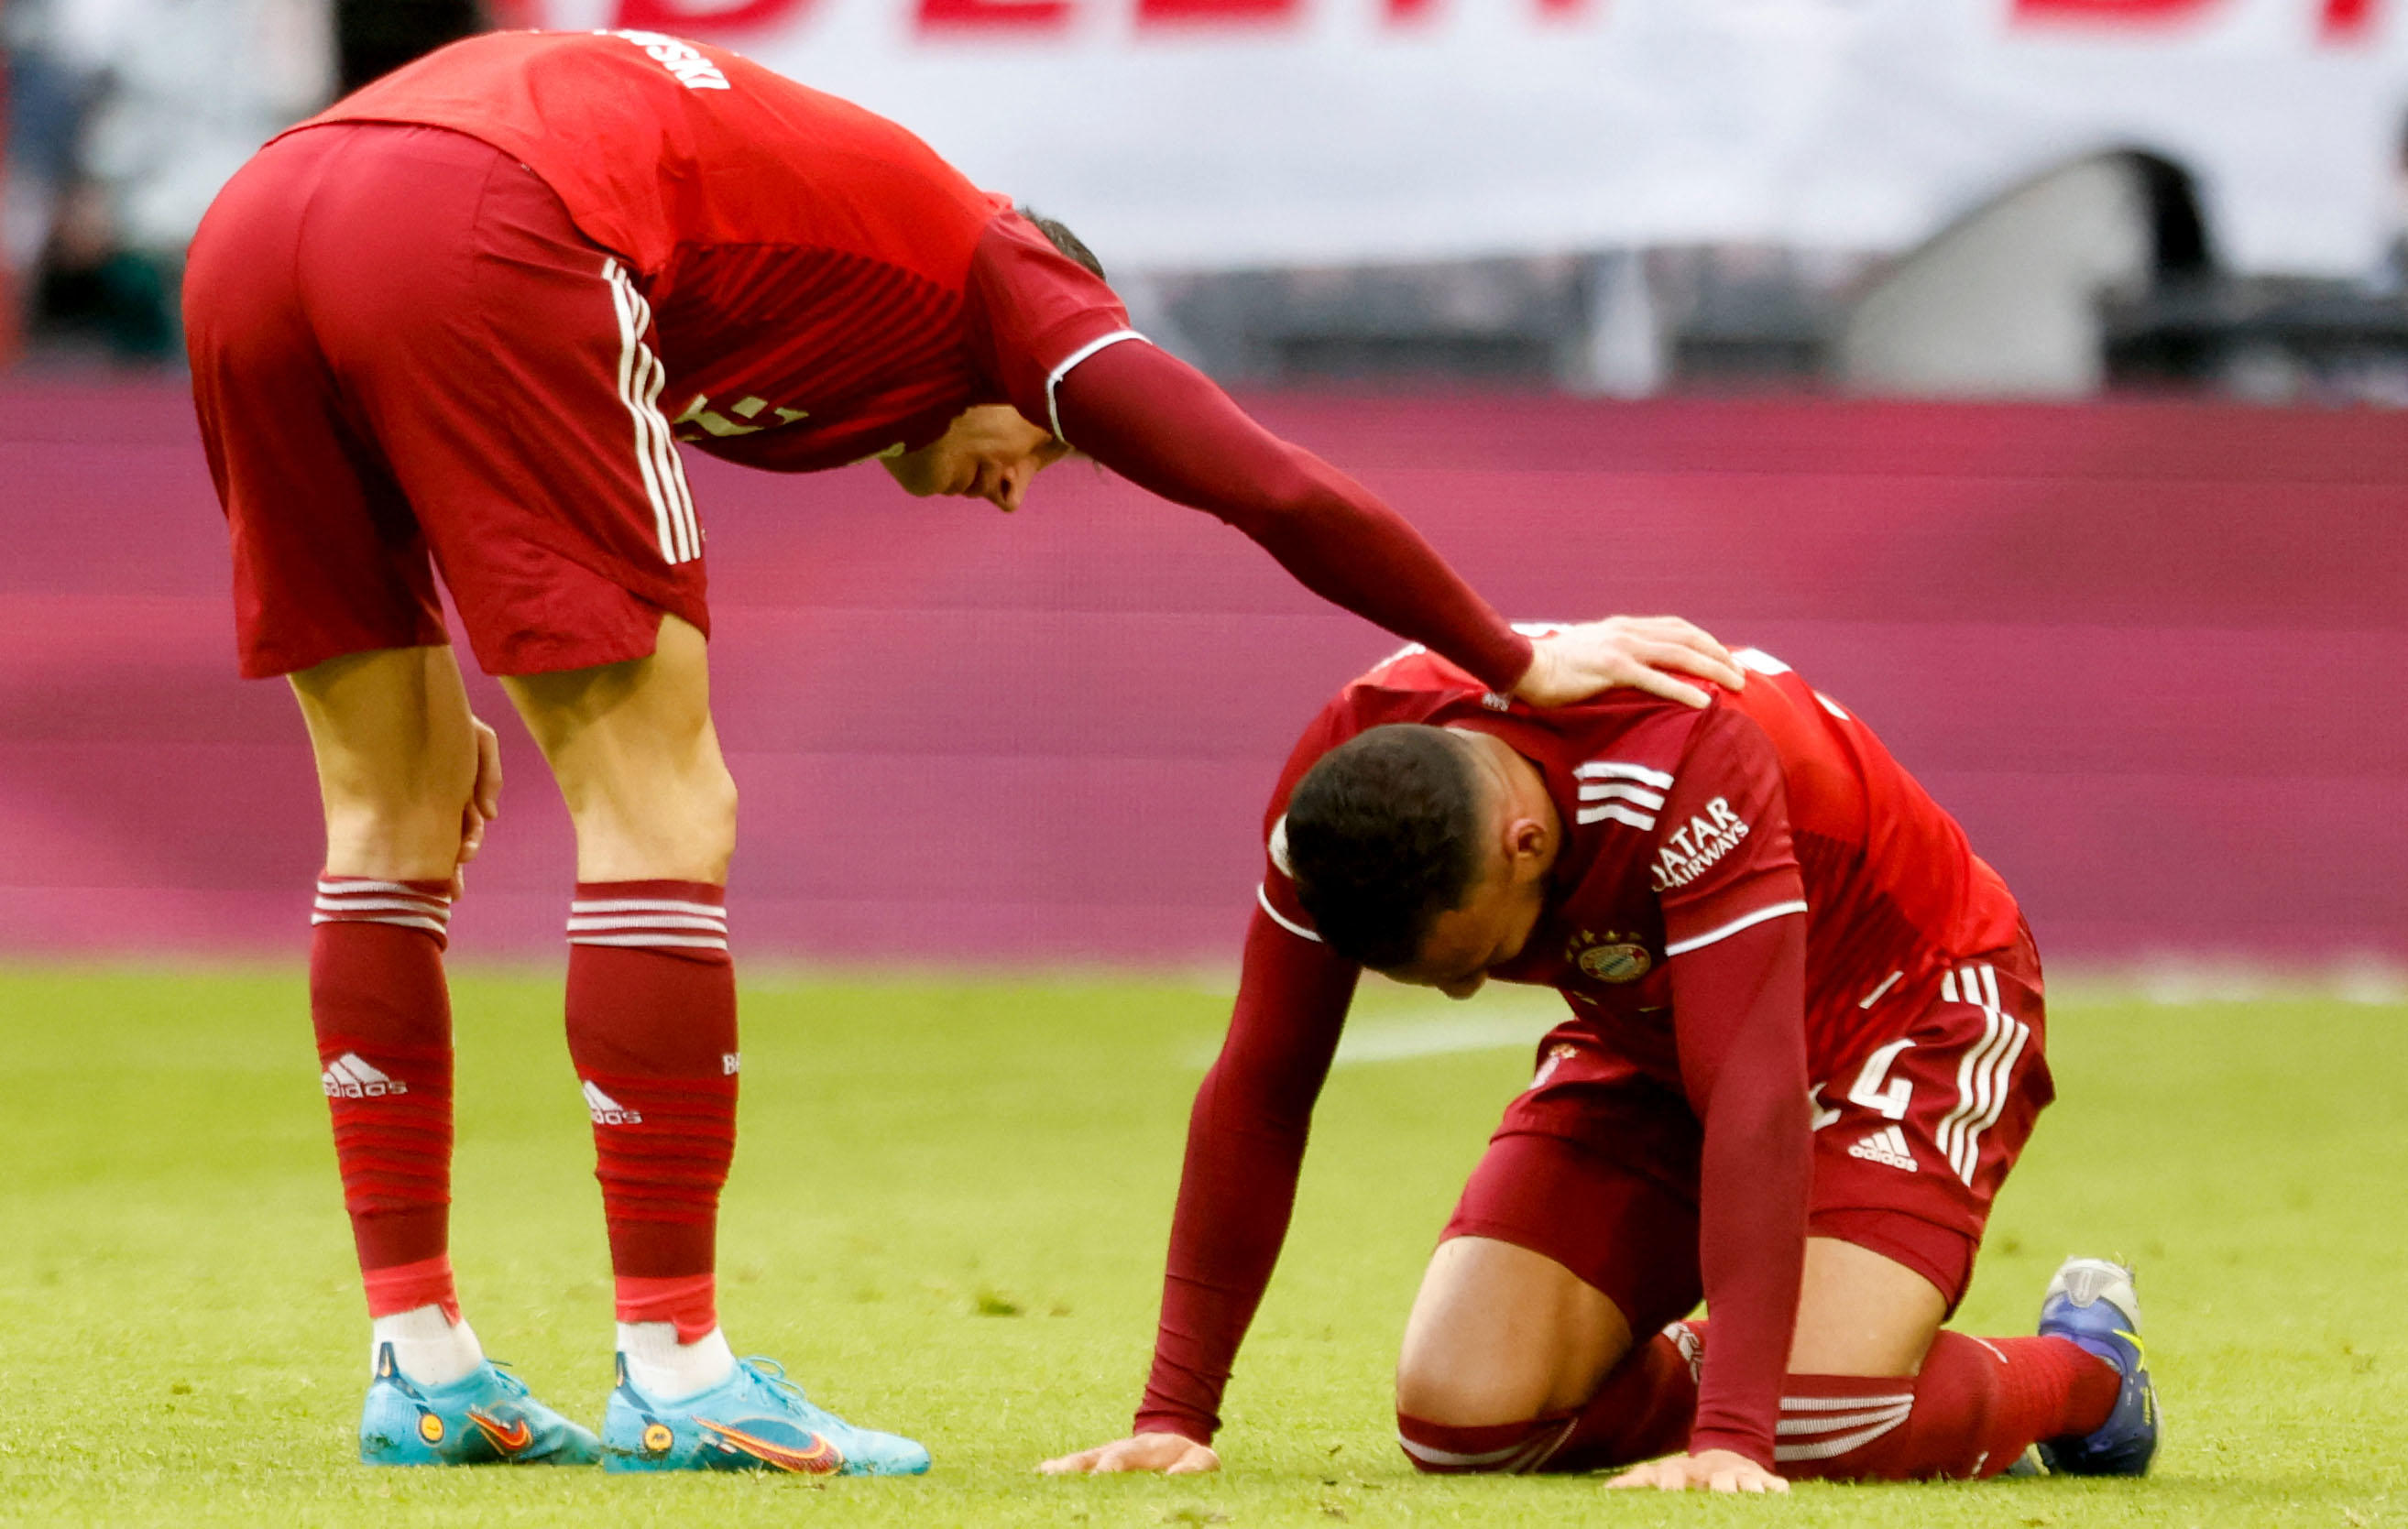 Blessé face à Greuther Fürth, le Français du Bayern Munich, Corentin Tolisso, a quitté la pelouse en pleurs dimanche. AFP/Michaela Rehle